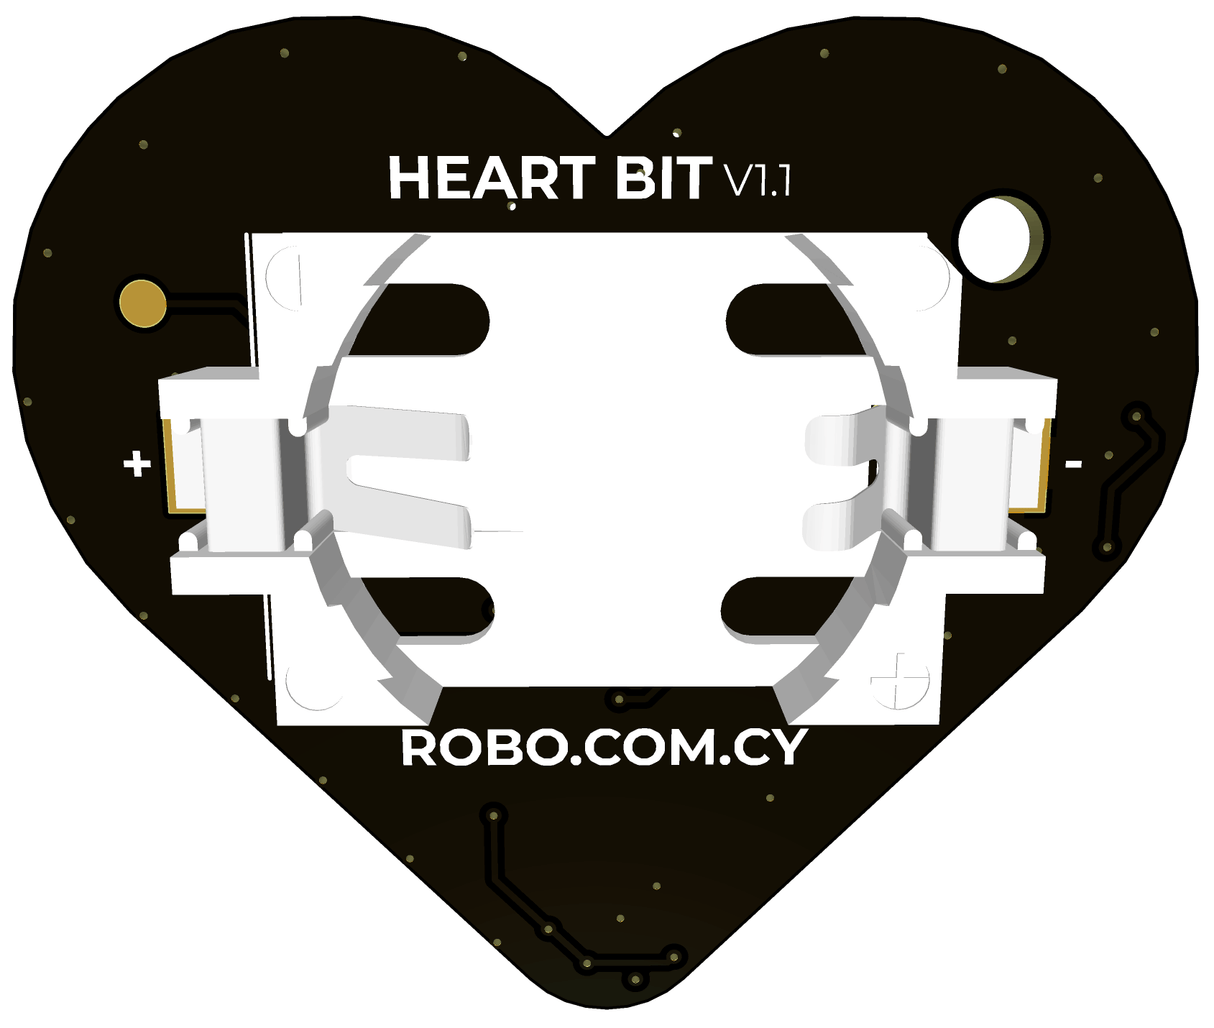 HeartBit V1